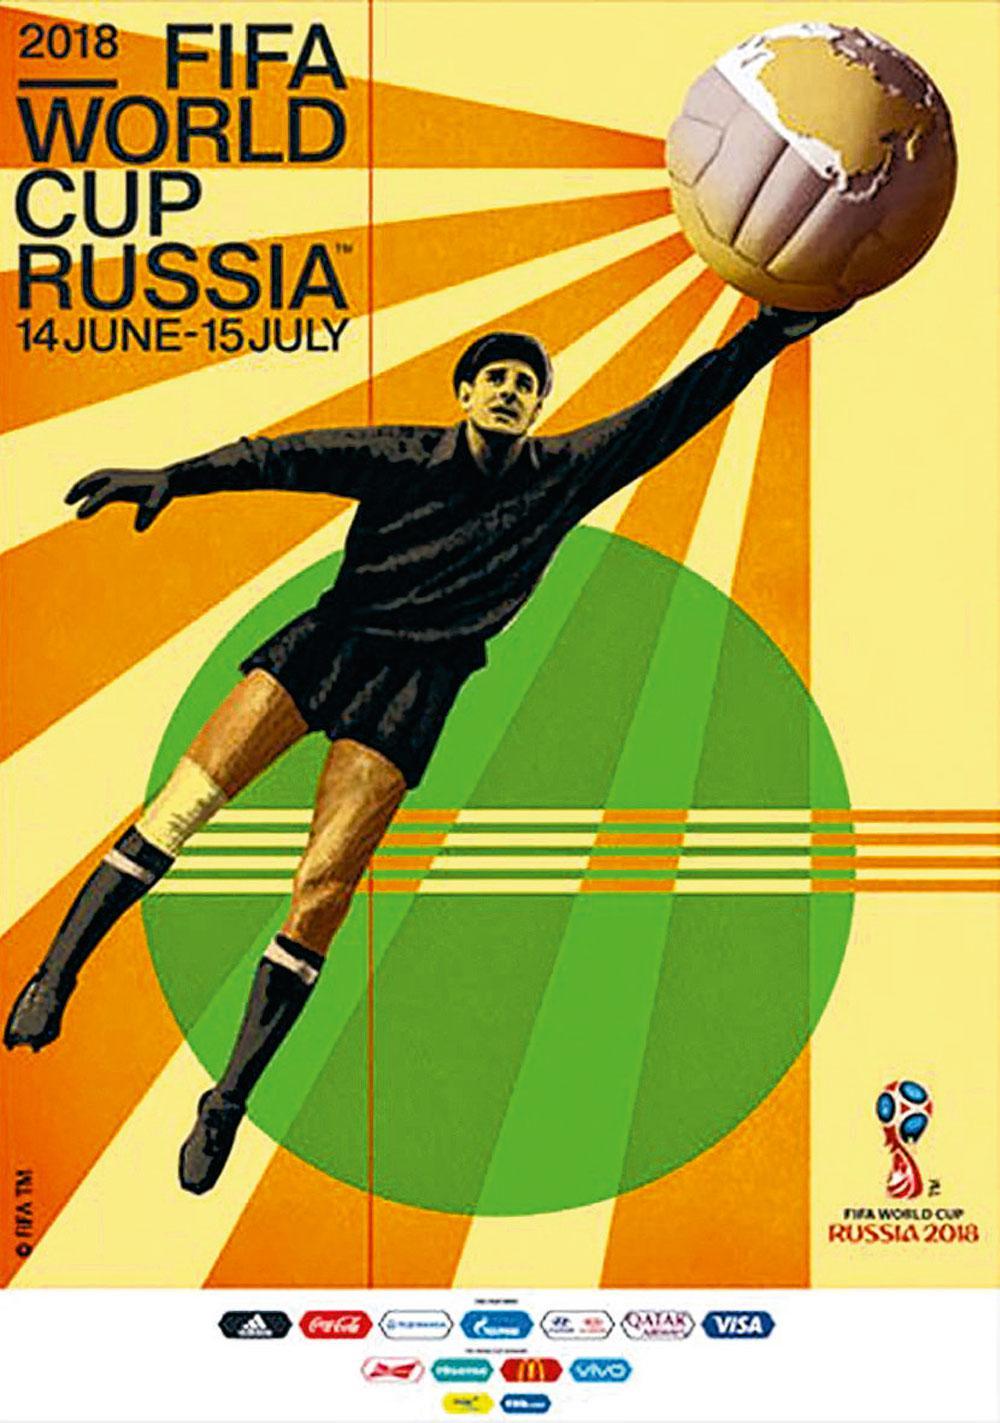 Le légendaire gardien Lev Yashine est présent sur l'affiche officielle du Mondial.